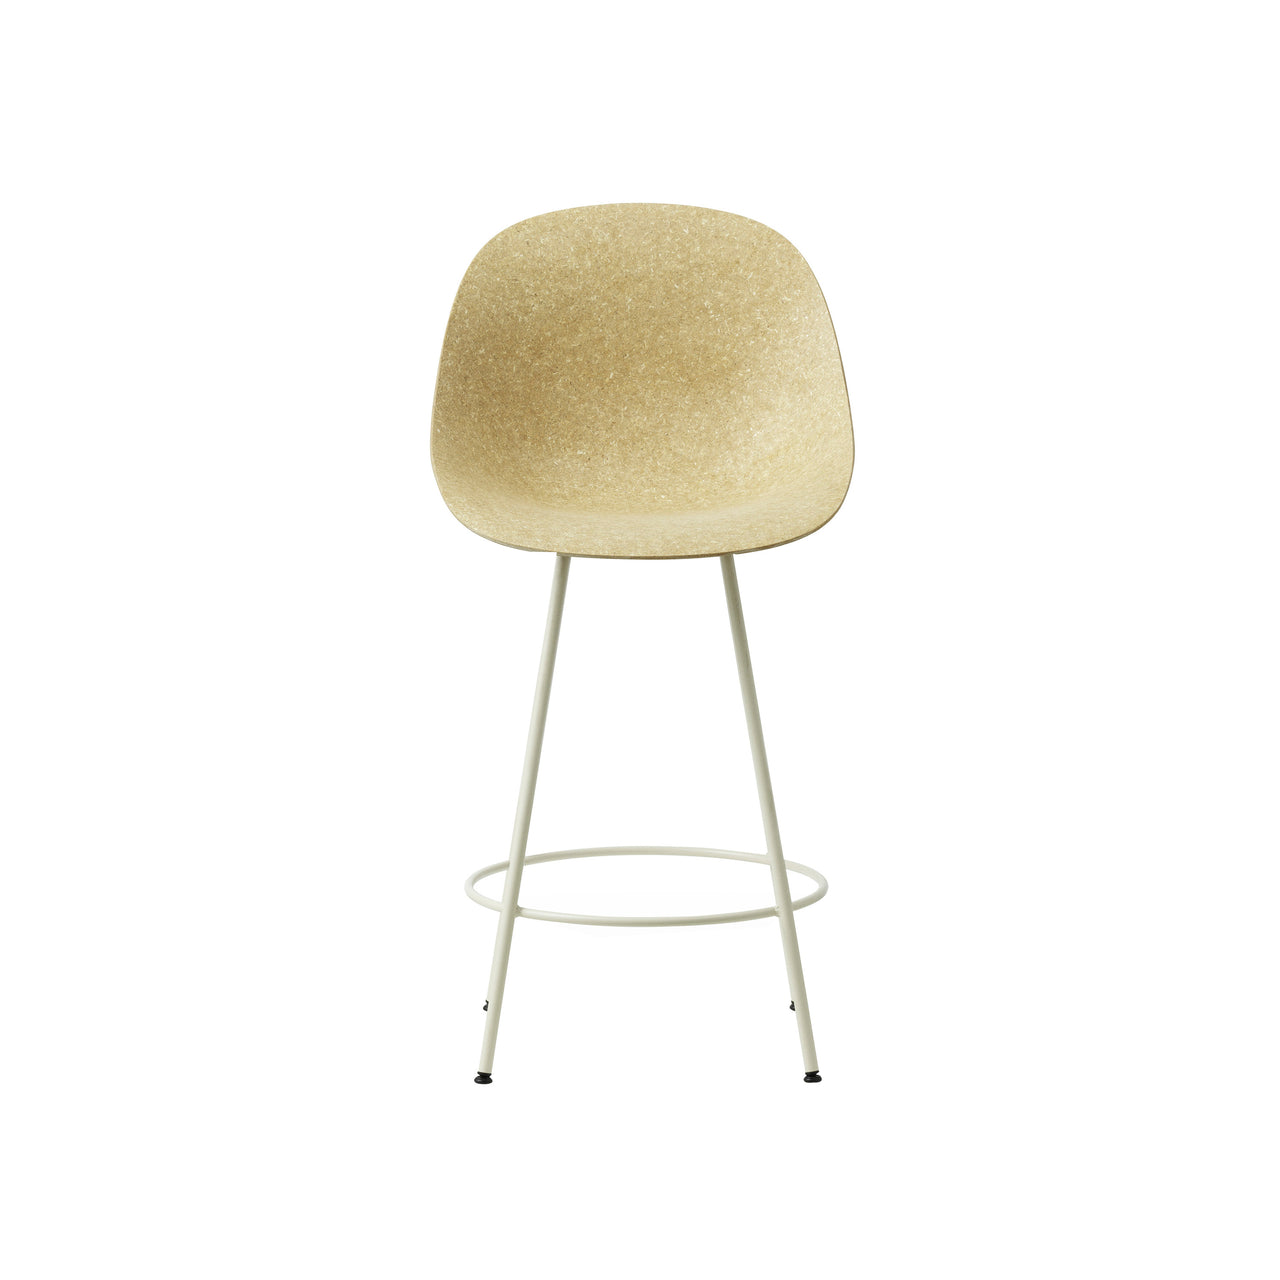 Mat Bar + Counter Chair: Counter + Hemp + Cream